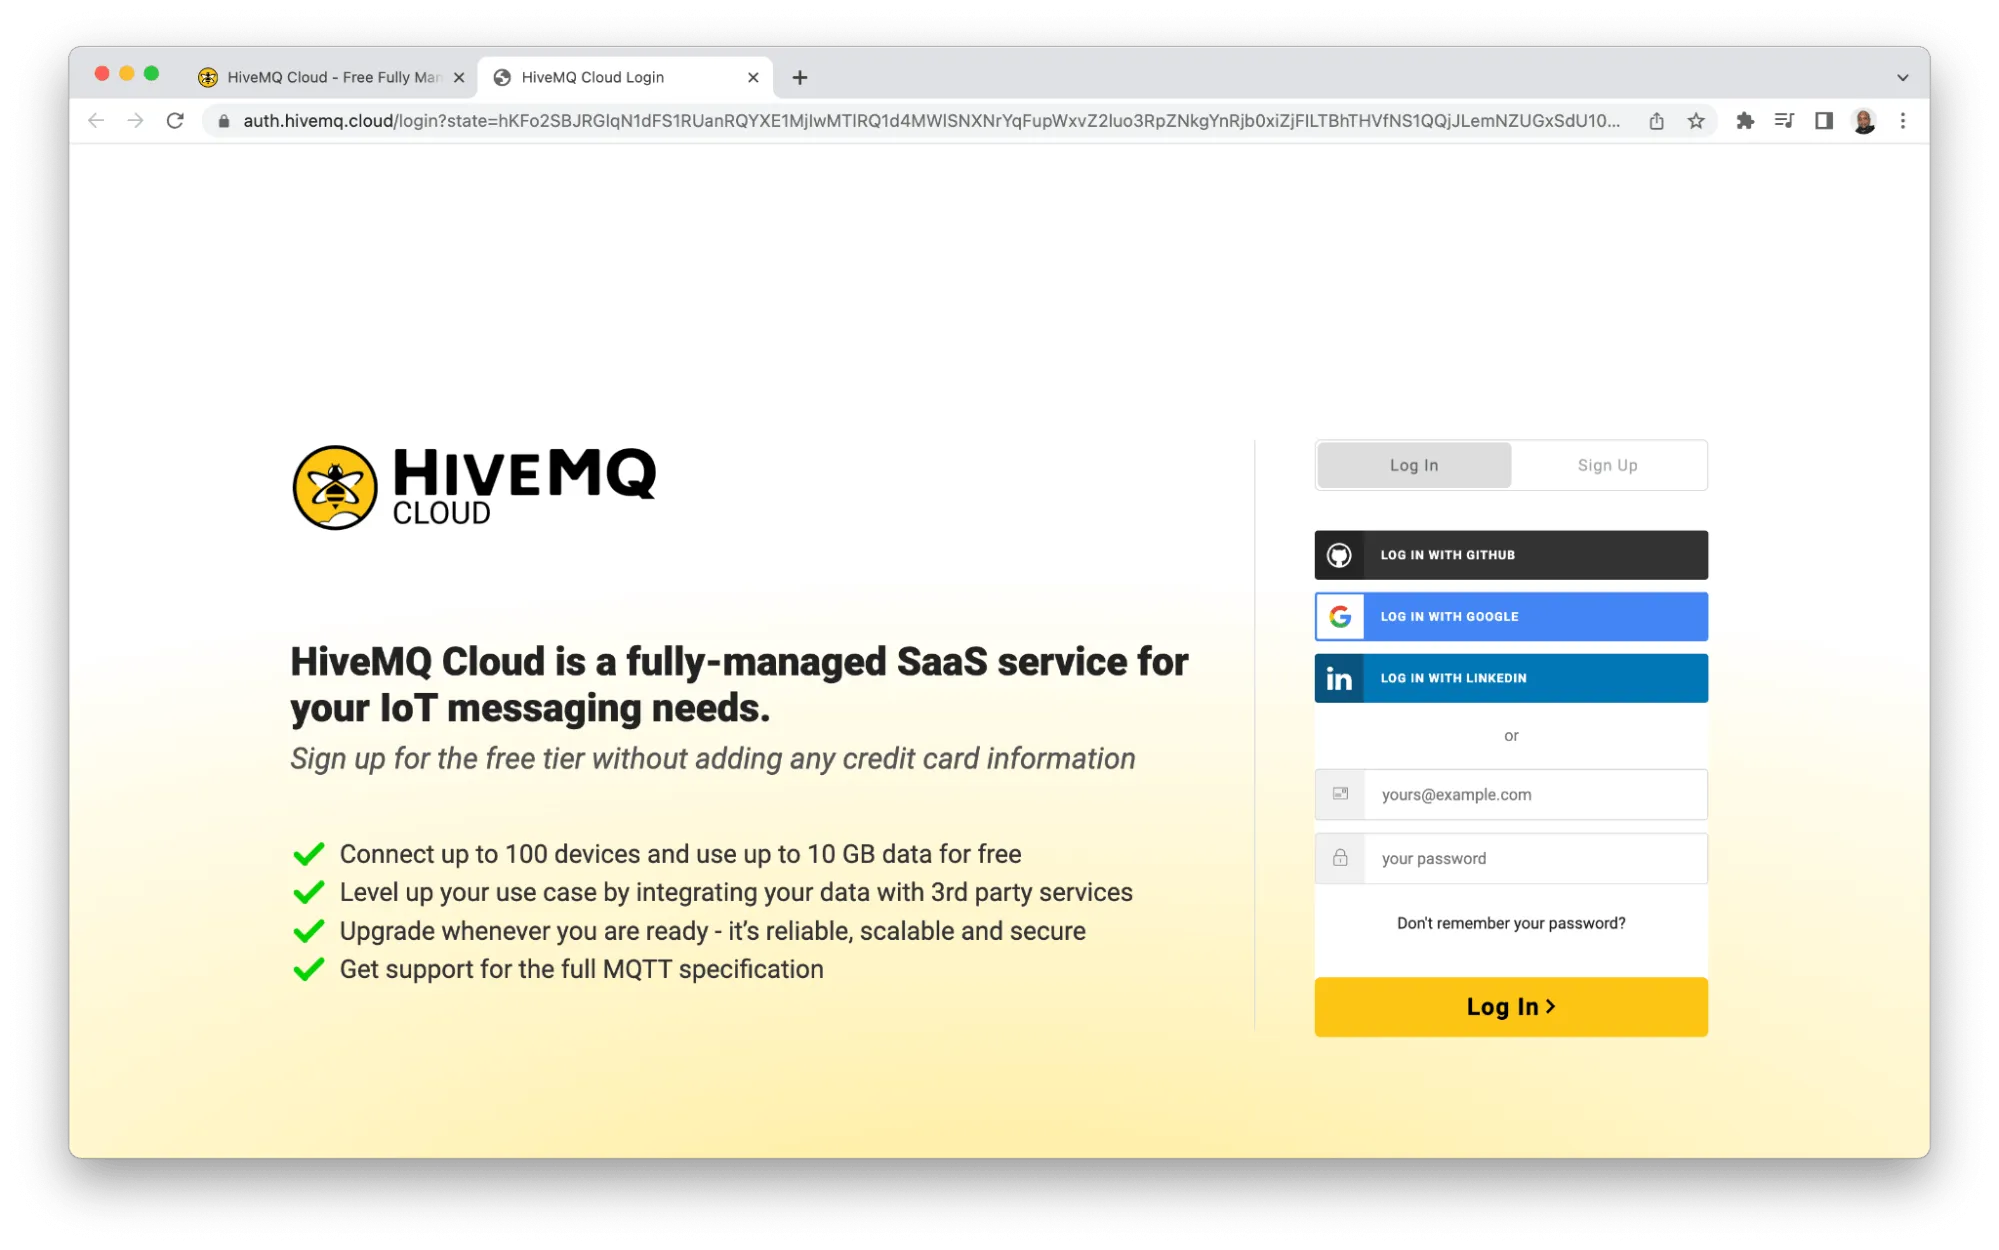 HiveMQ Cloud sign-up portal